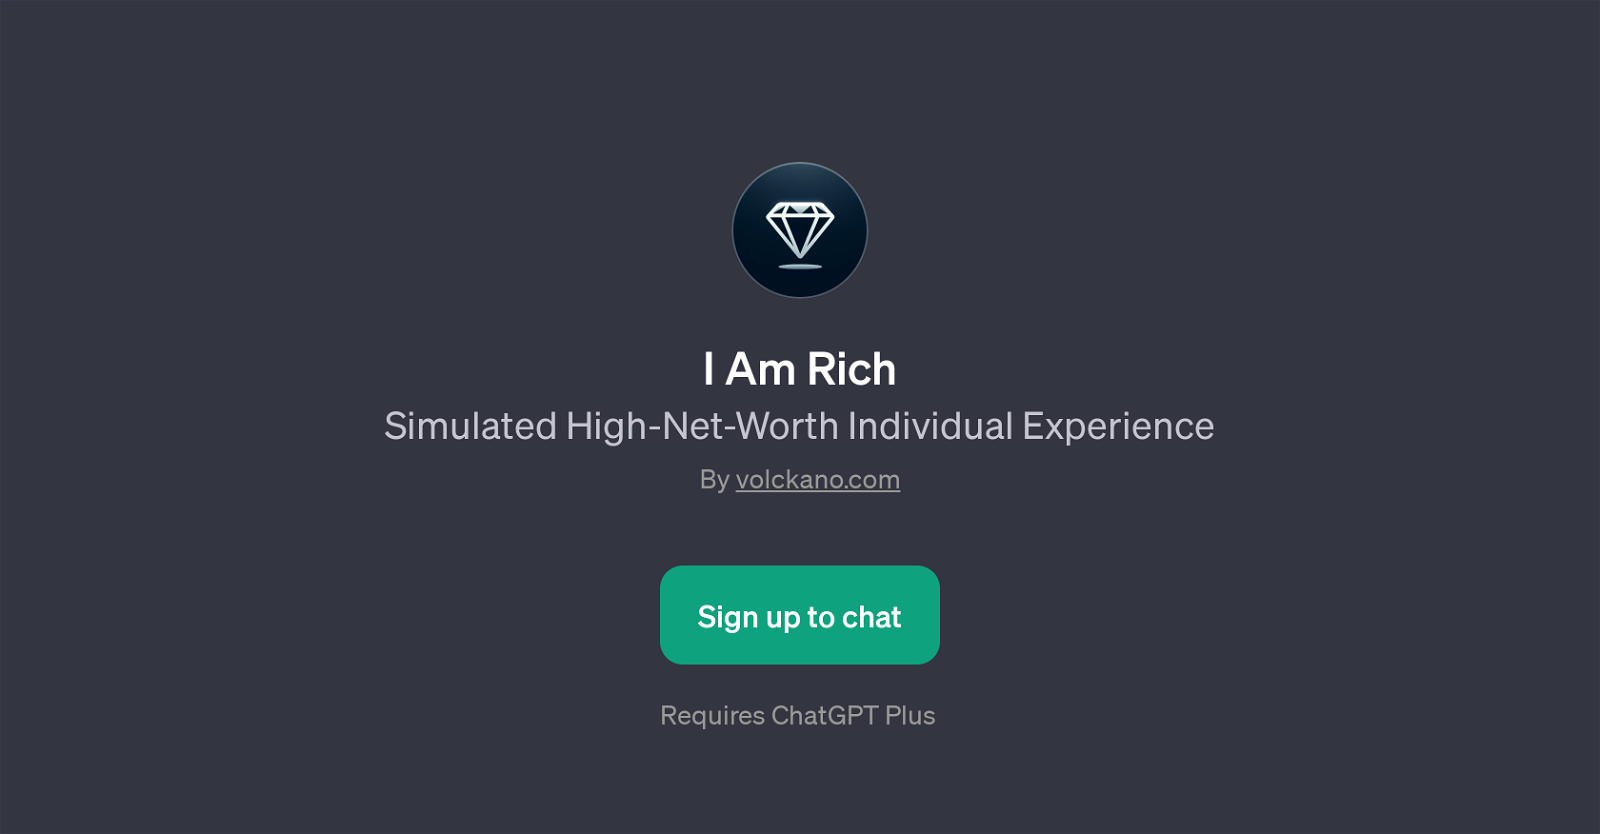 I Am Rich website